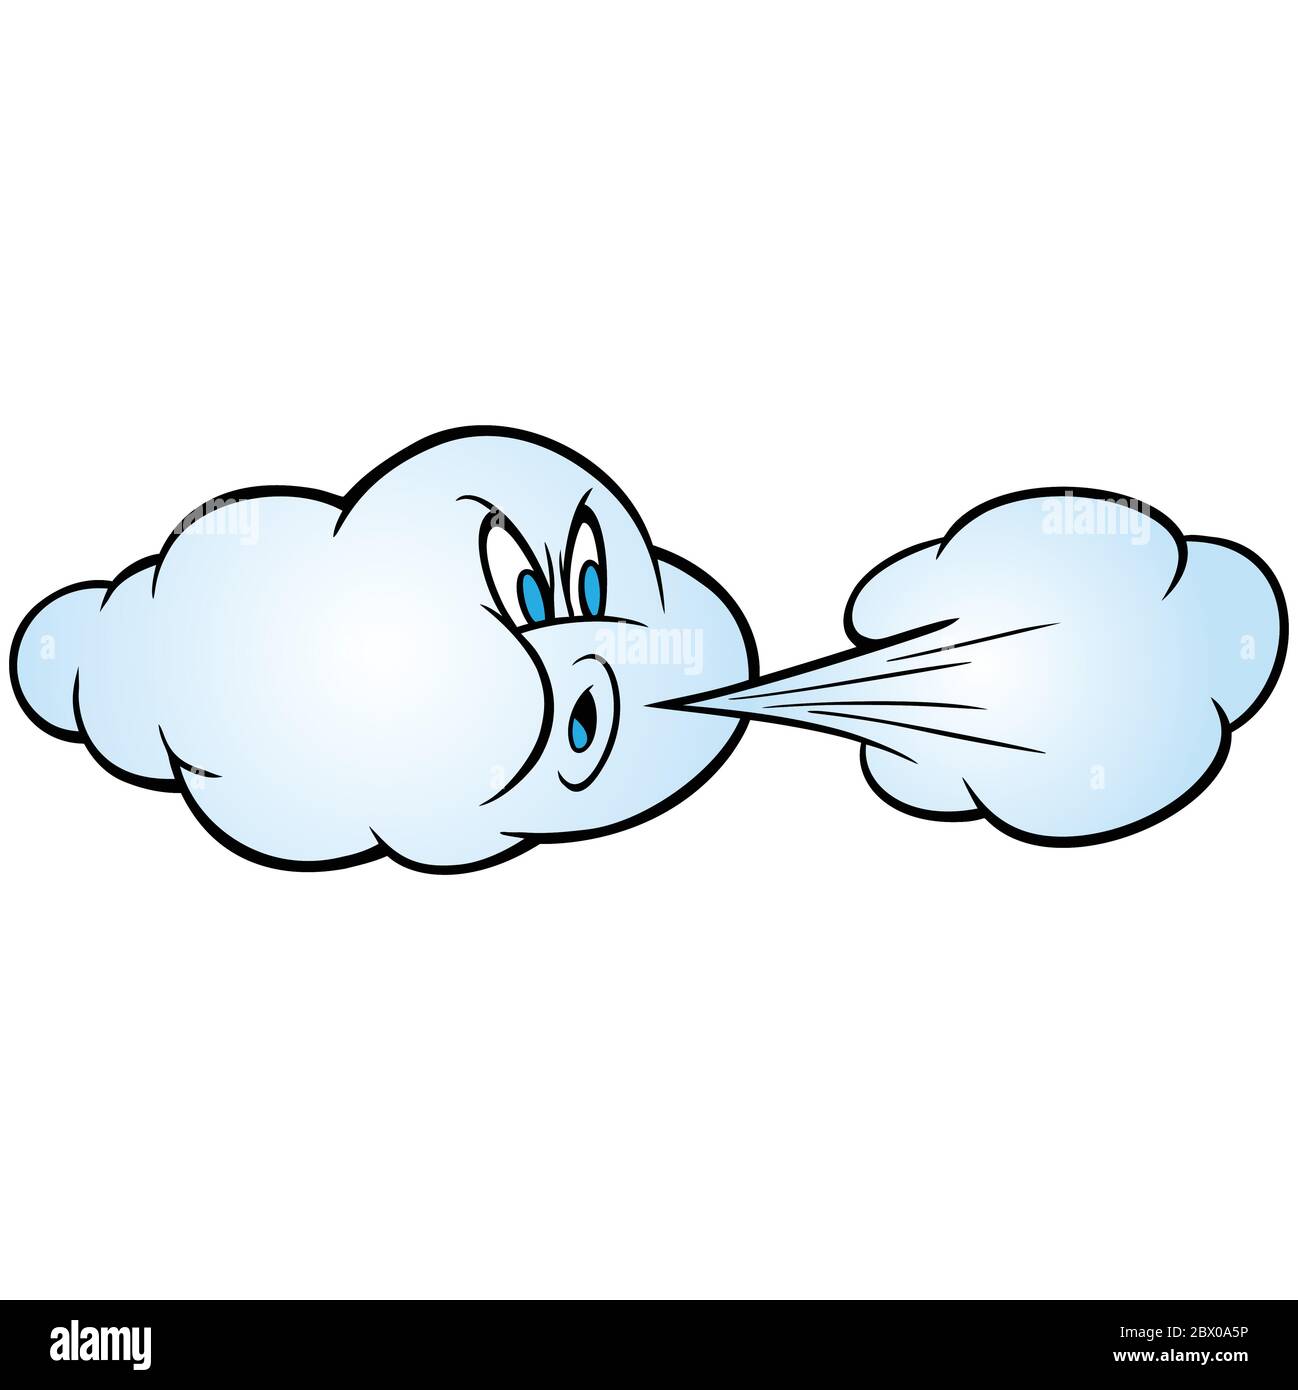 Viento Soplando Una Ilustración De Dibujos Animados De Una Nube